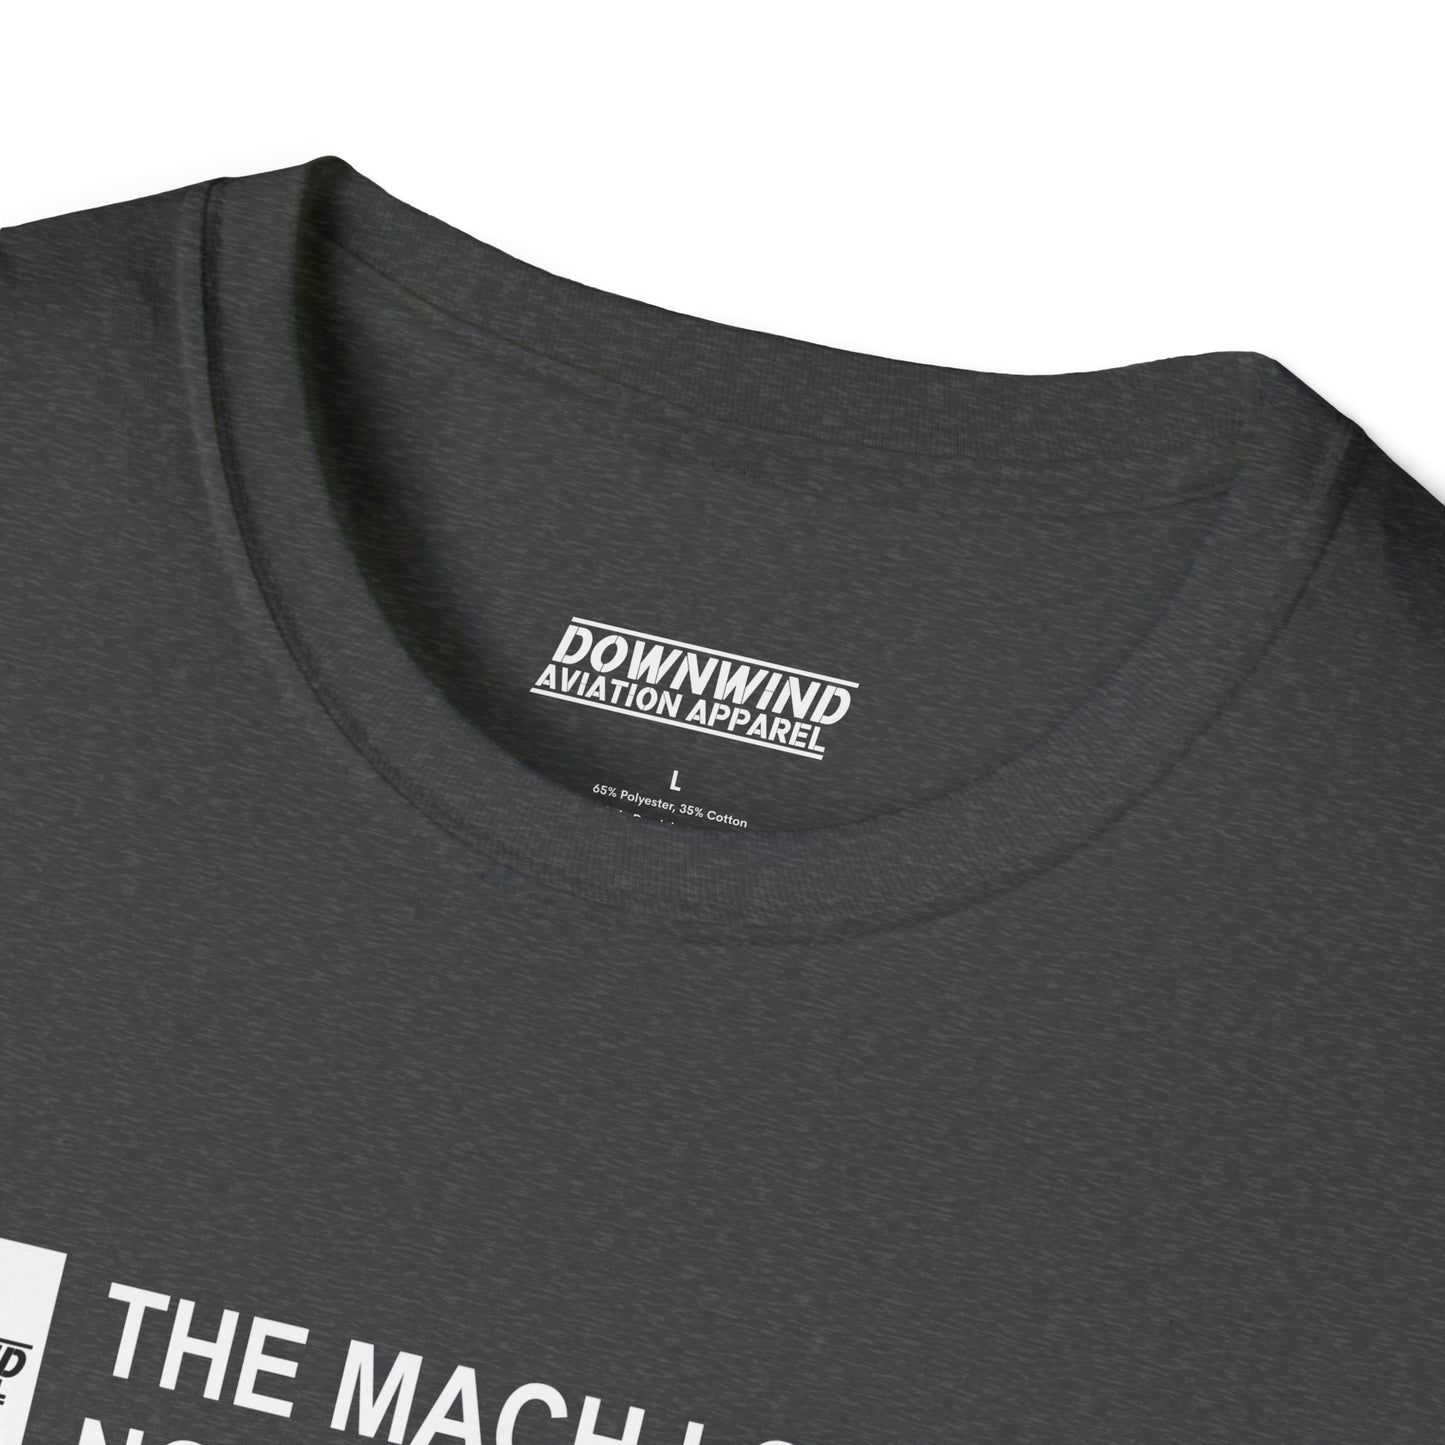 The Mach Loop / North Wales T-Shirt